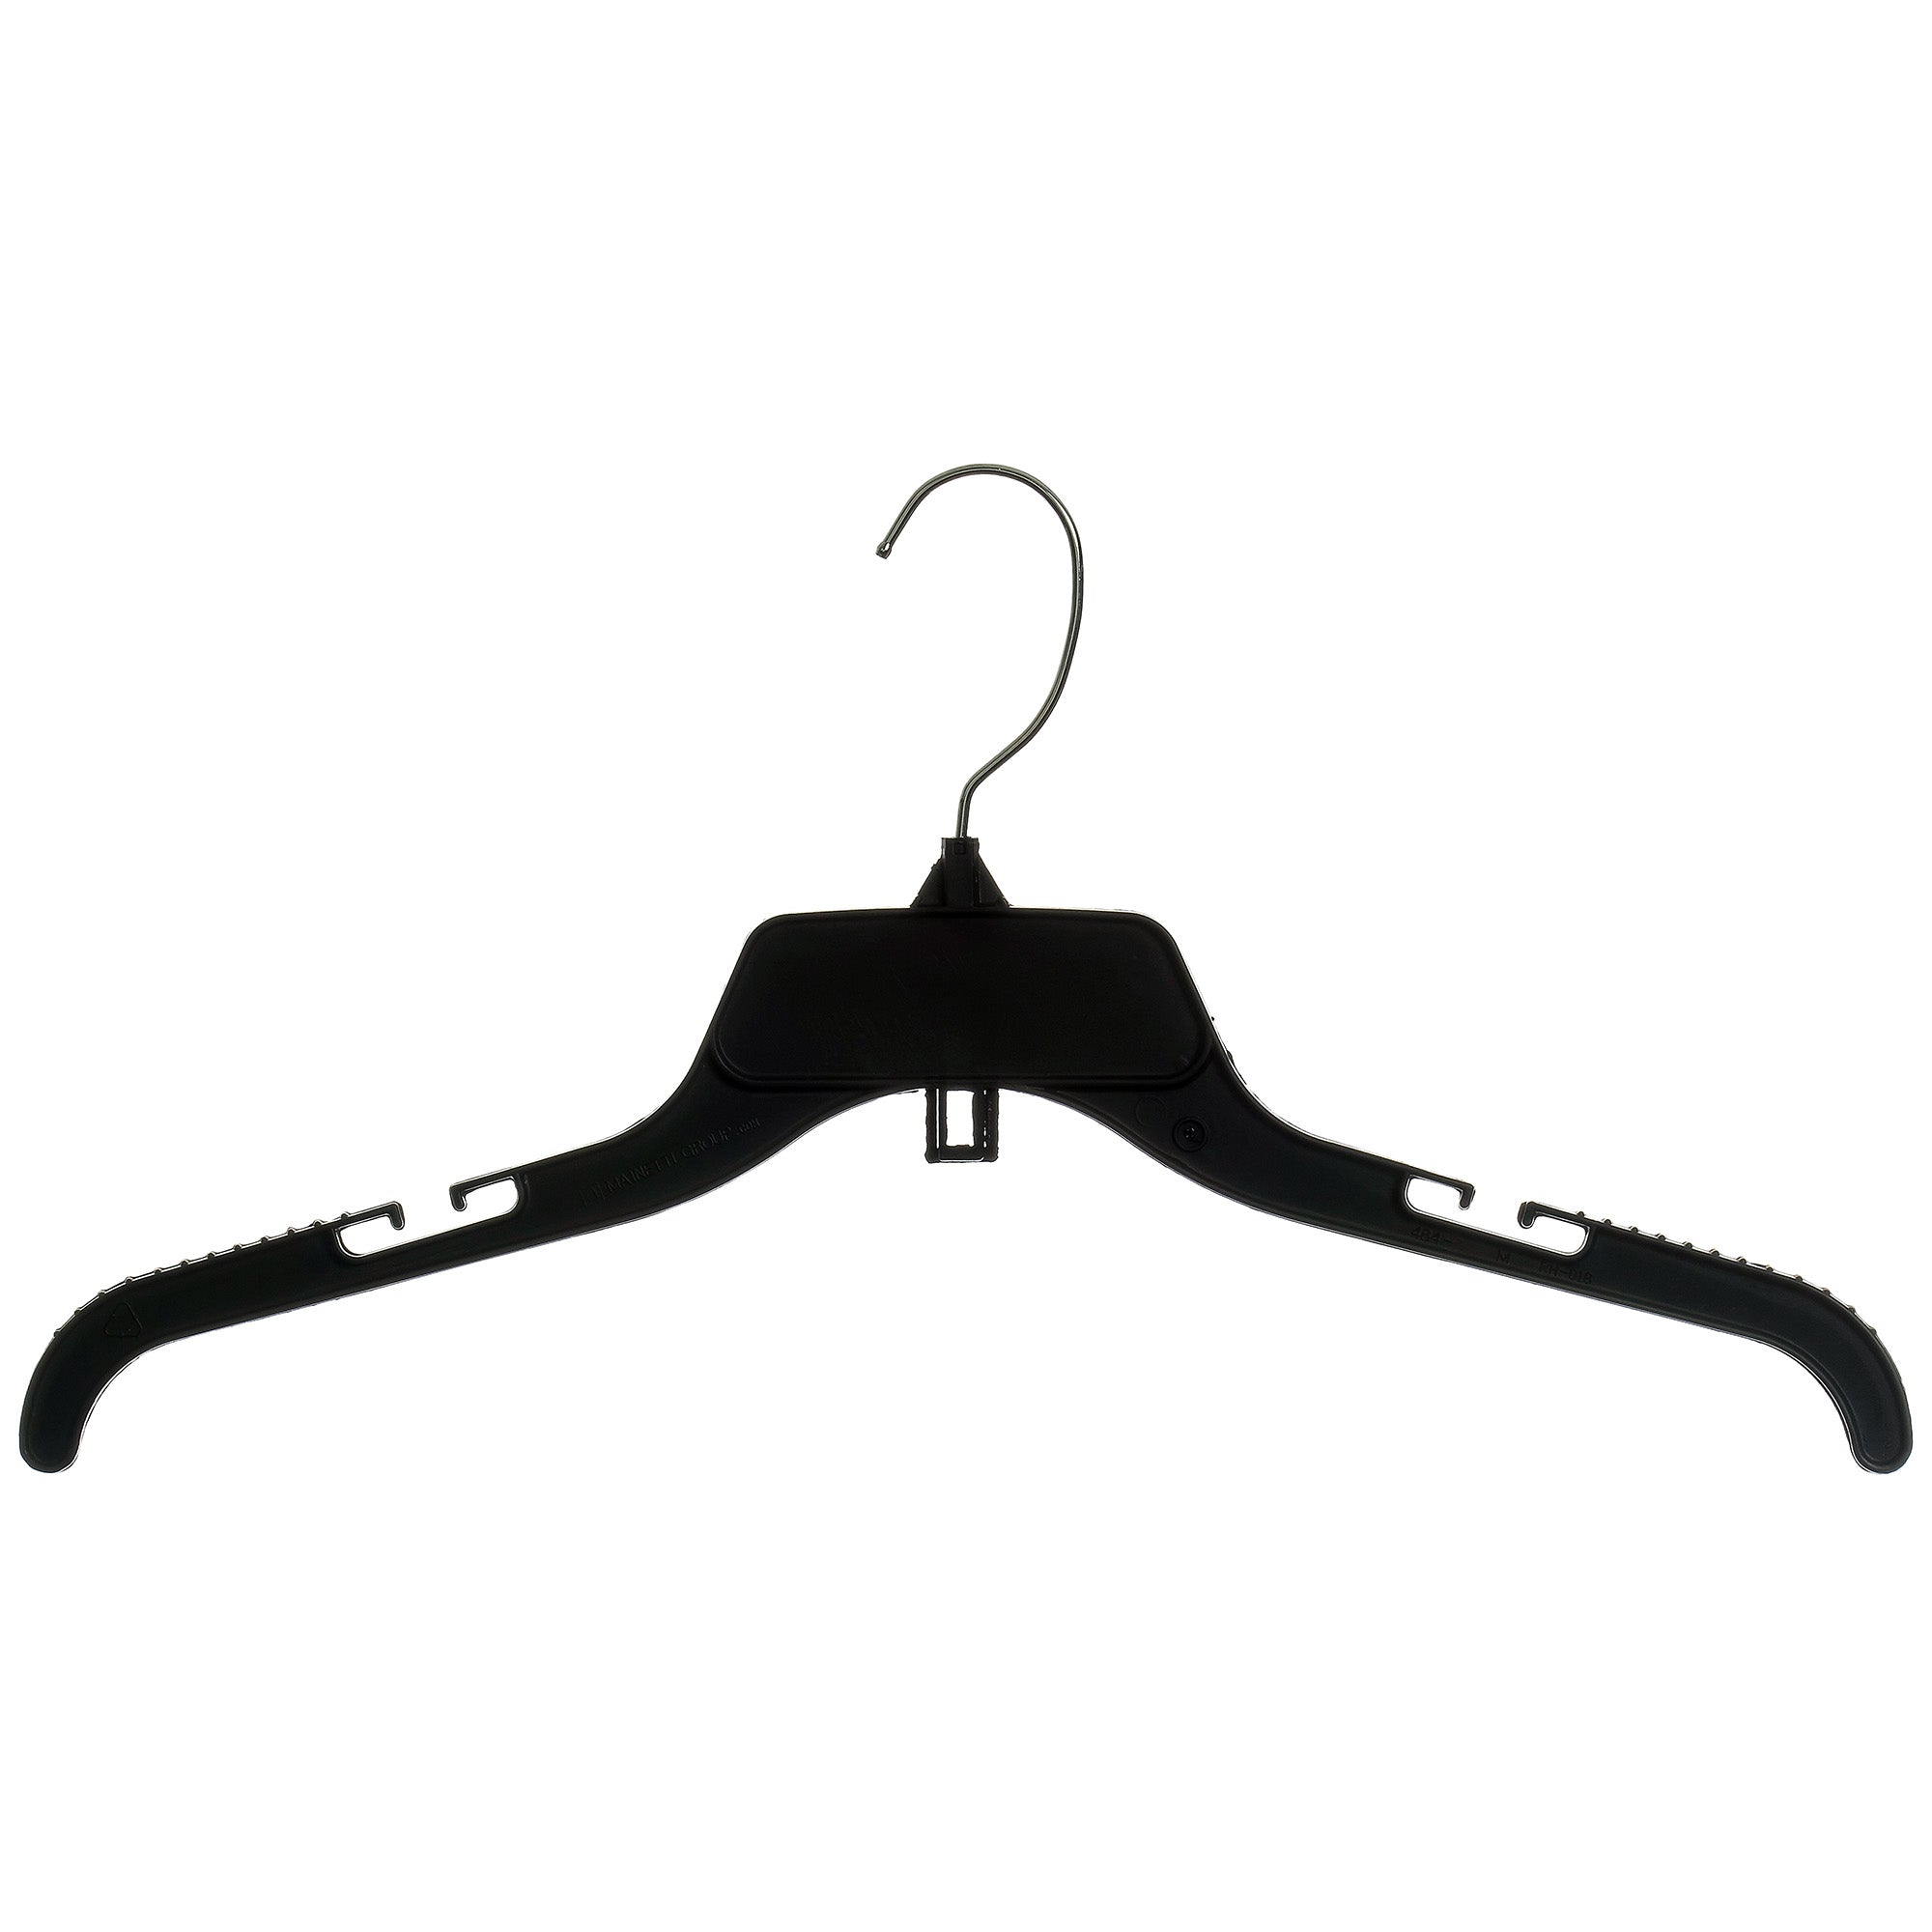 Men's Clothes Hangers of Rebar - Bent in Merica